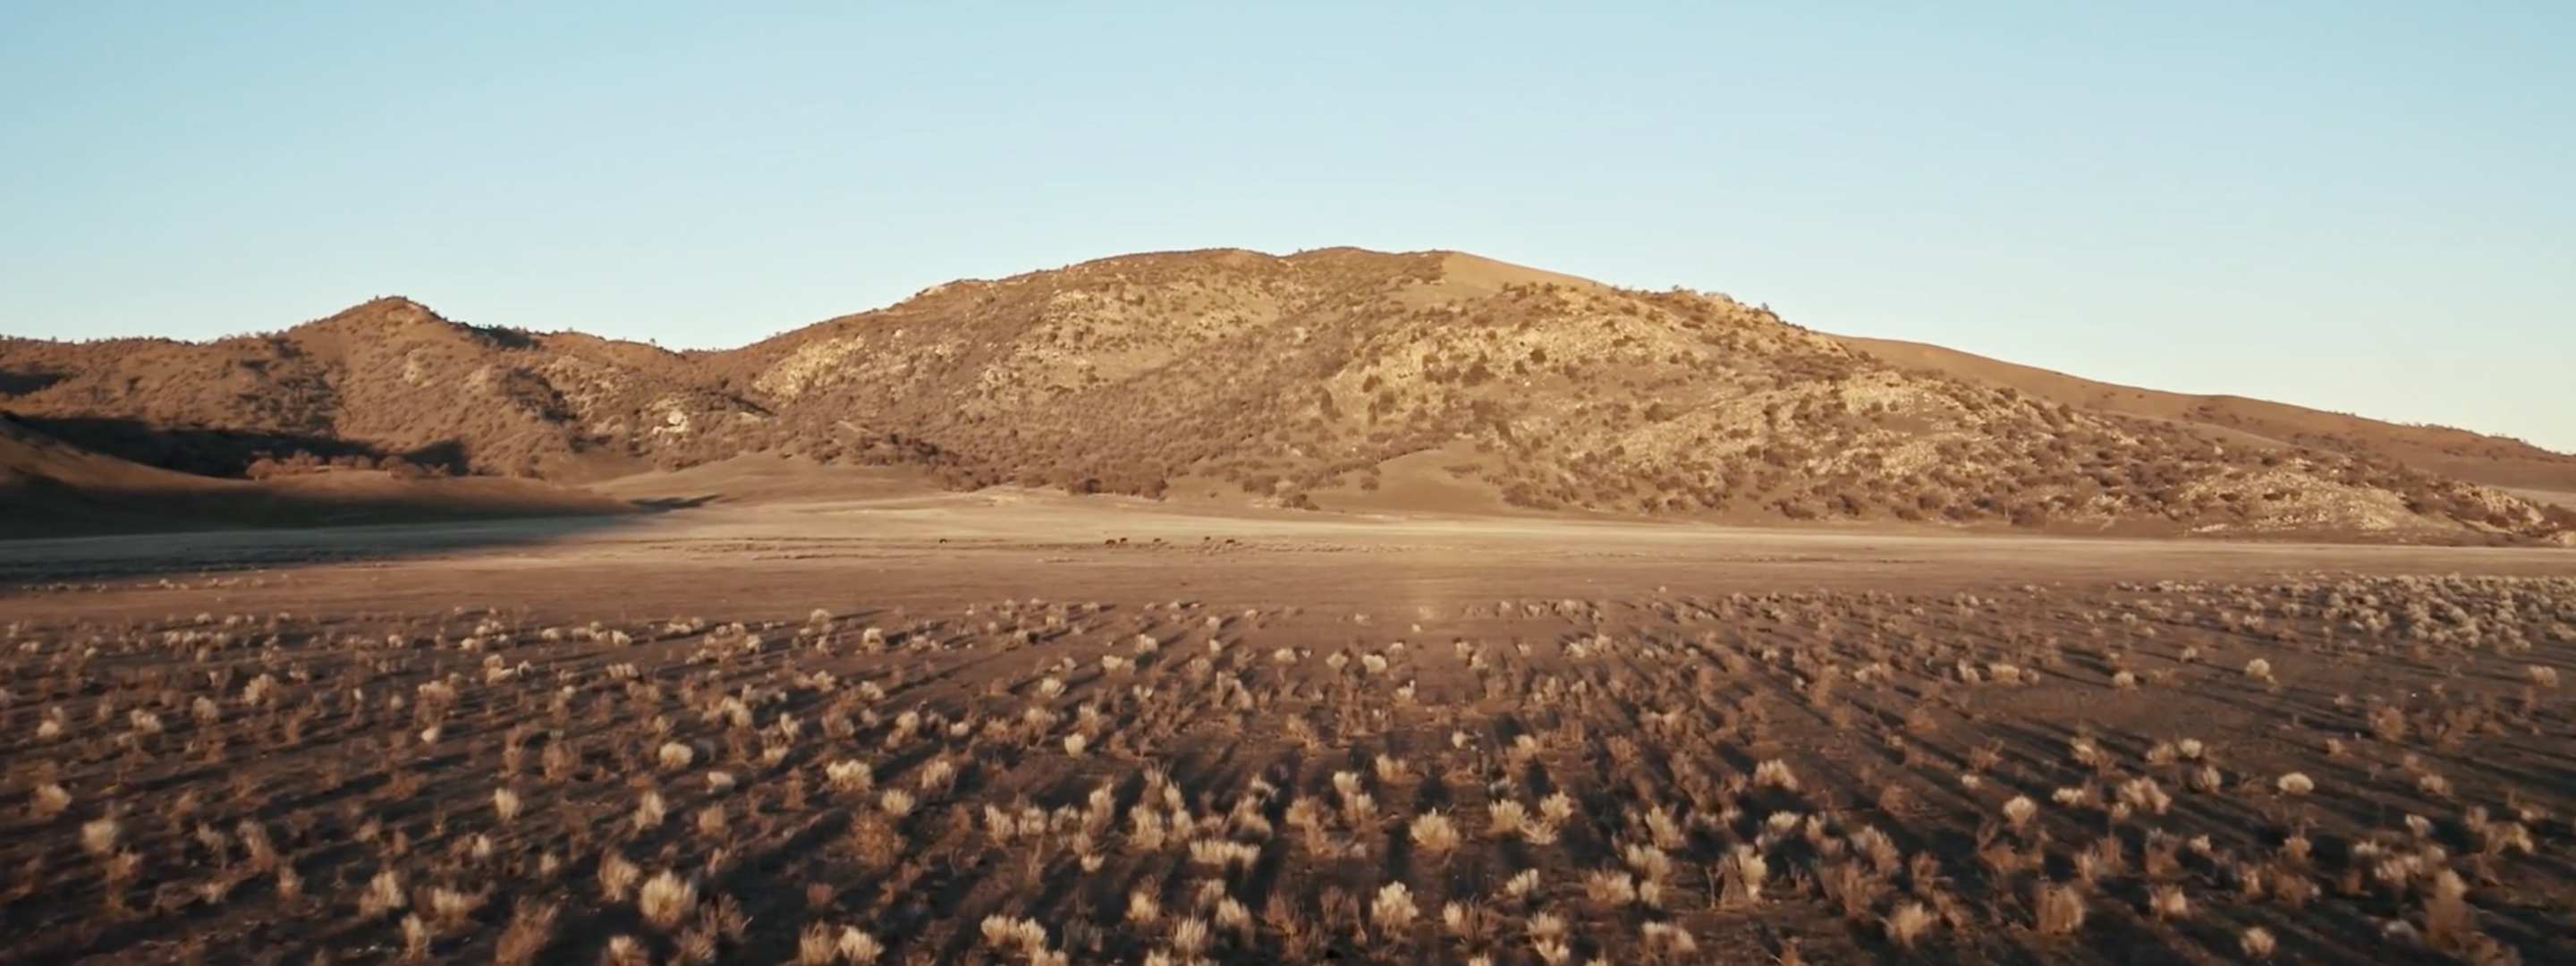 <a href="https://www.capgemini.com/news/inside-stories/mojave-desert/">Mojave Desert</a>